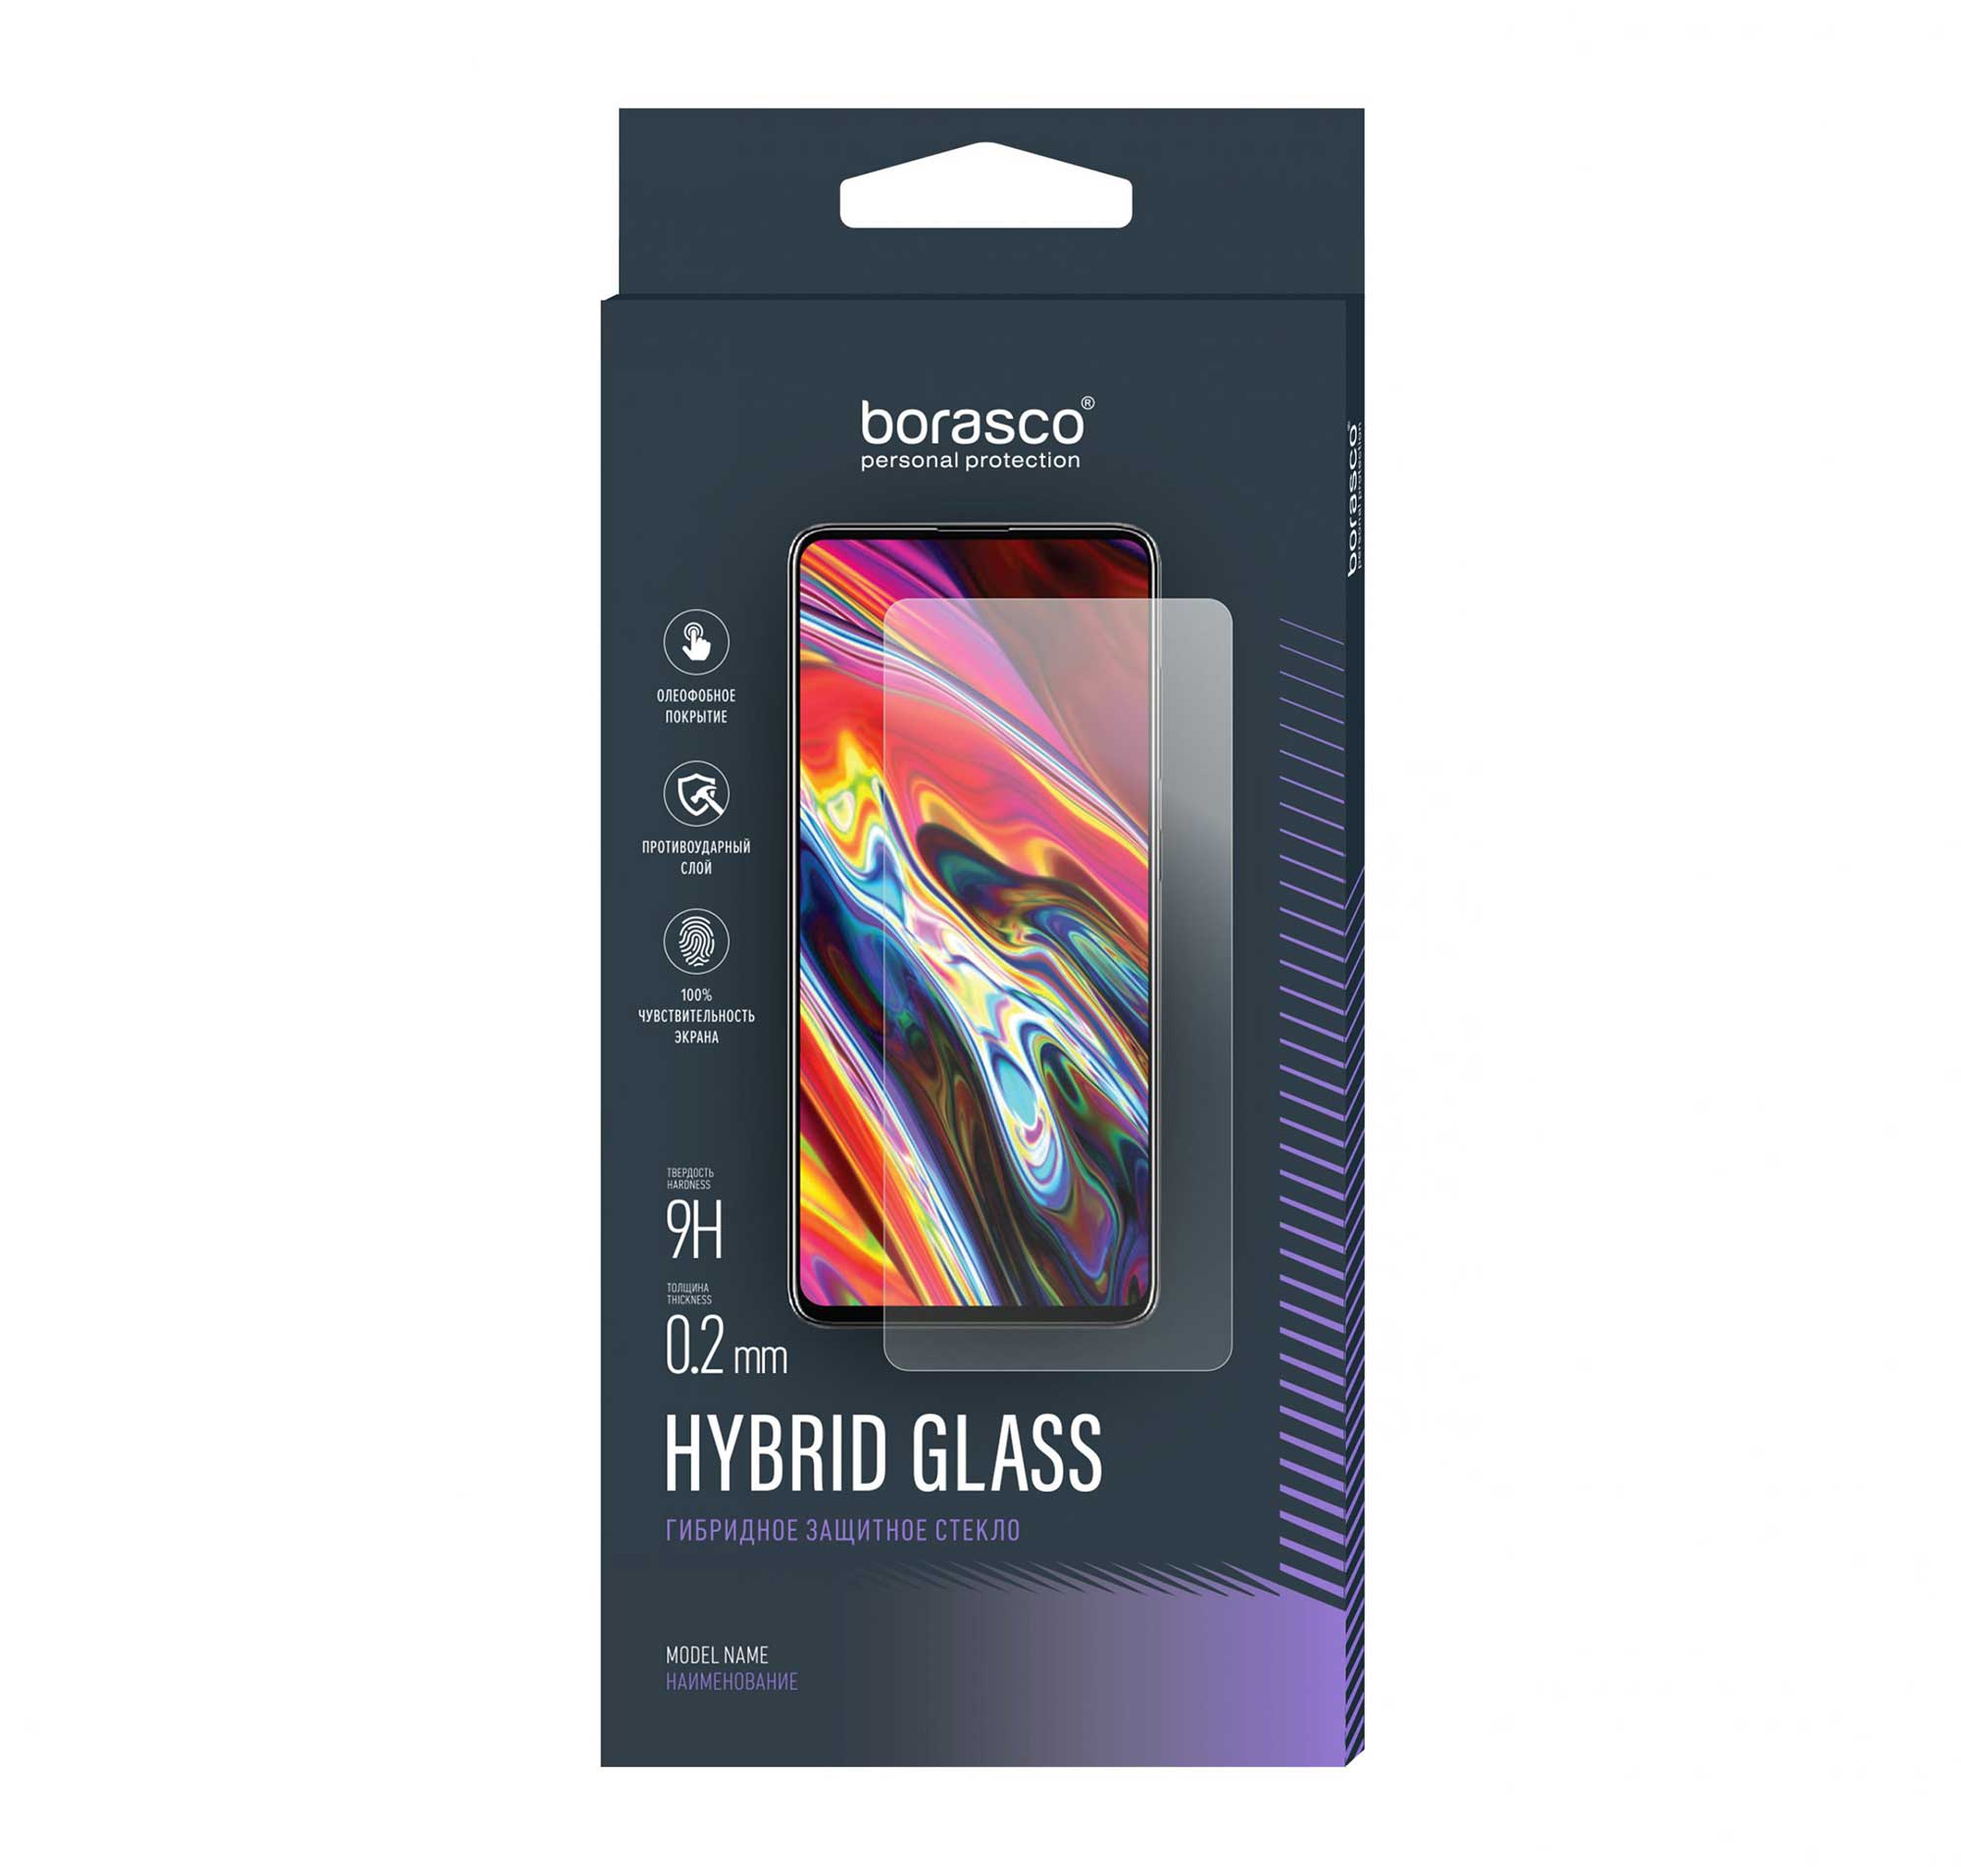 Защитное стекло Hybrid Glass для Itel A48 цена и фото